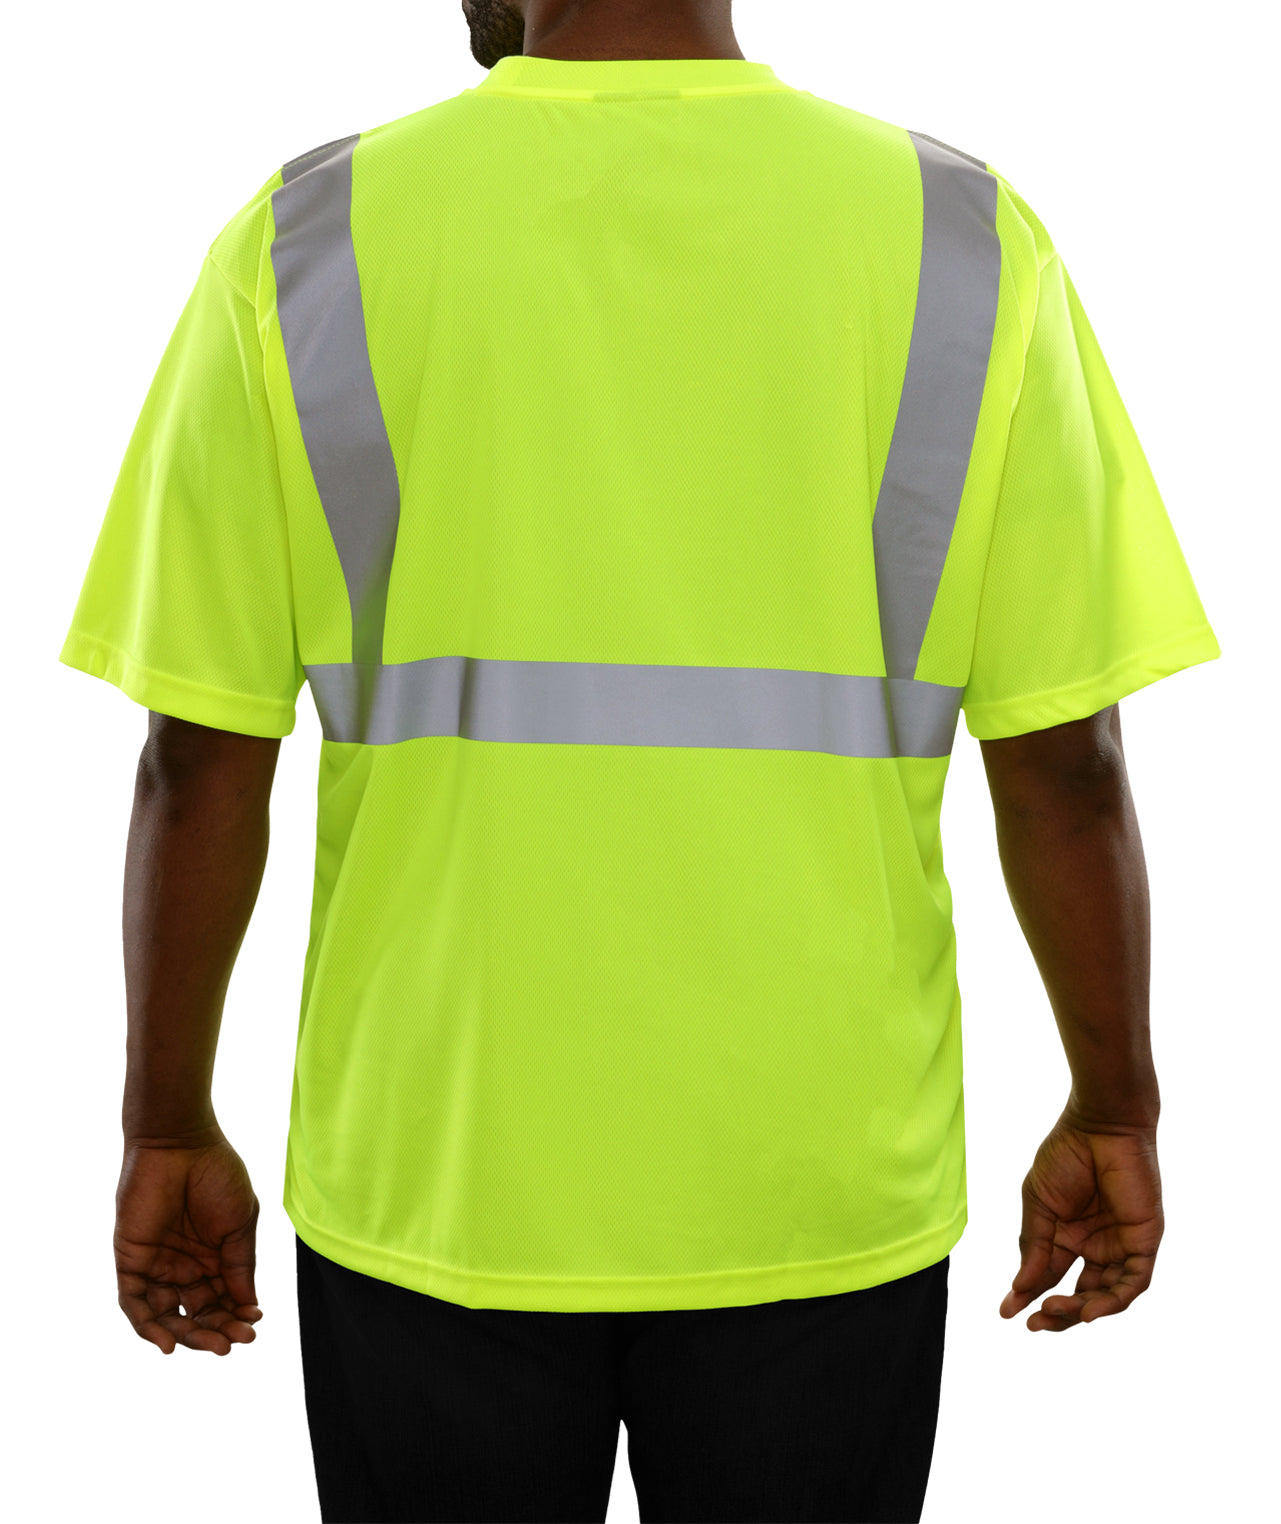 102STLM Hi-Vis Lime Birdseye Pocket Safety Shirt